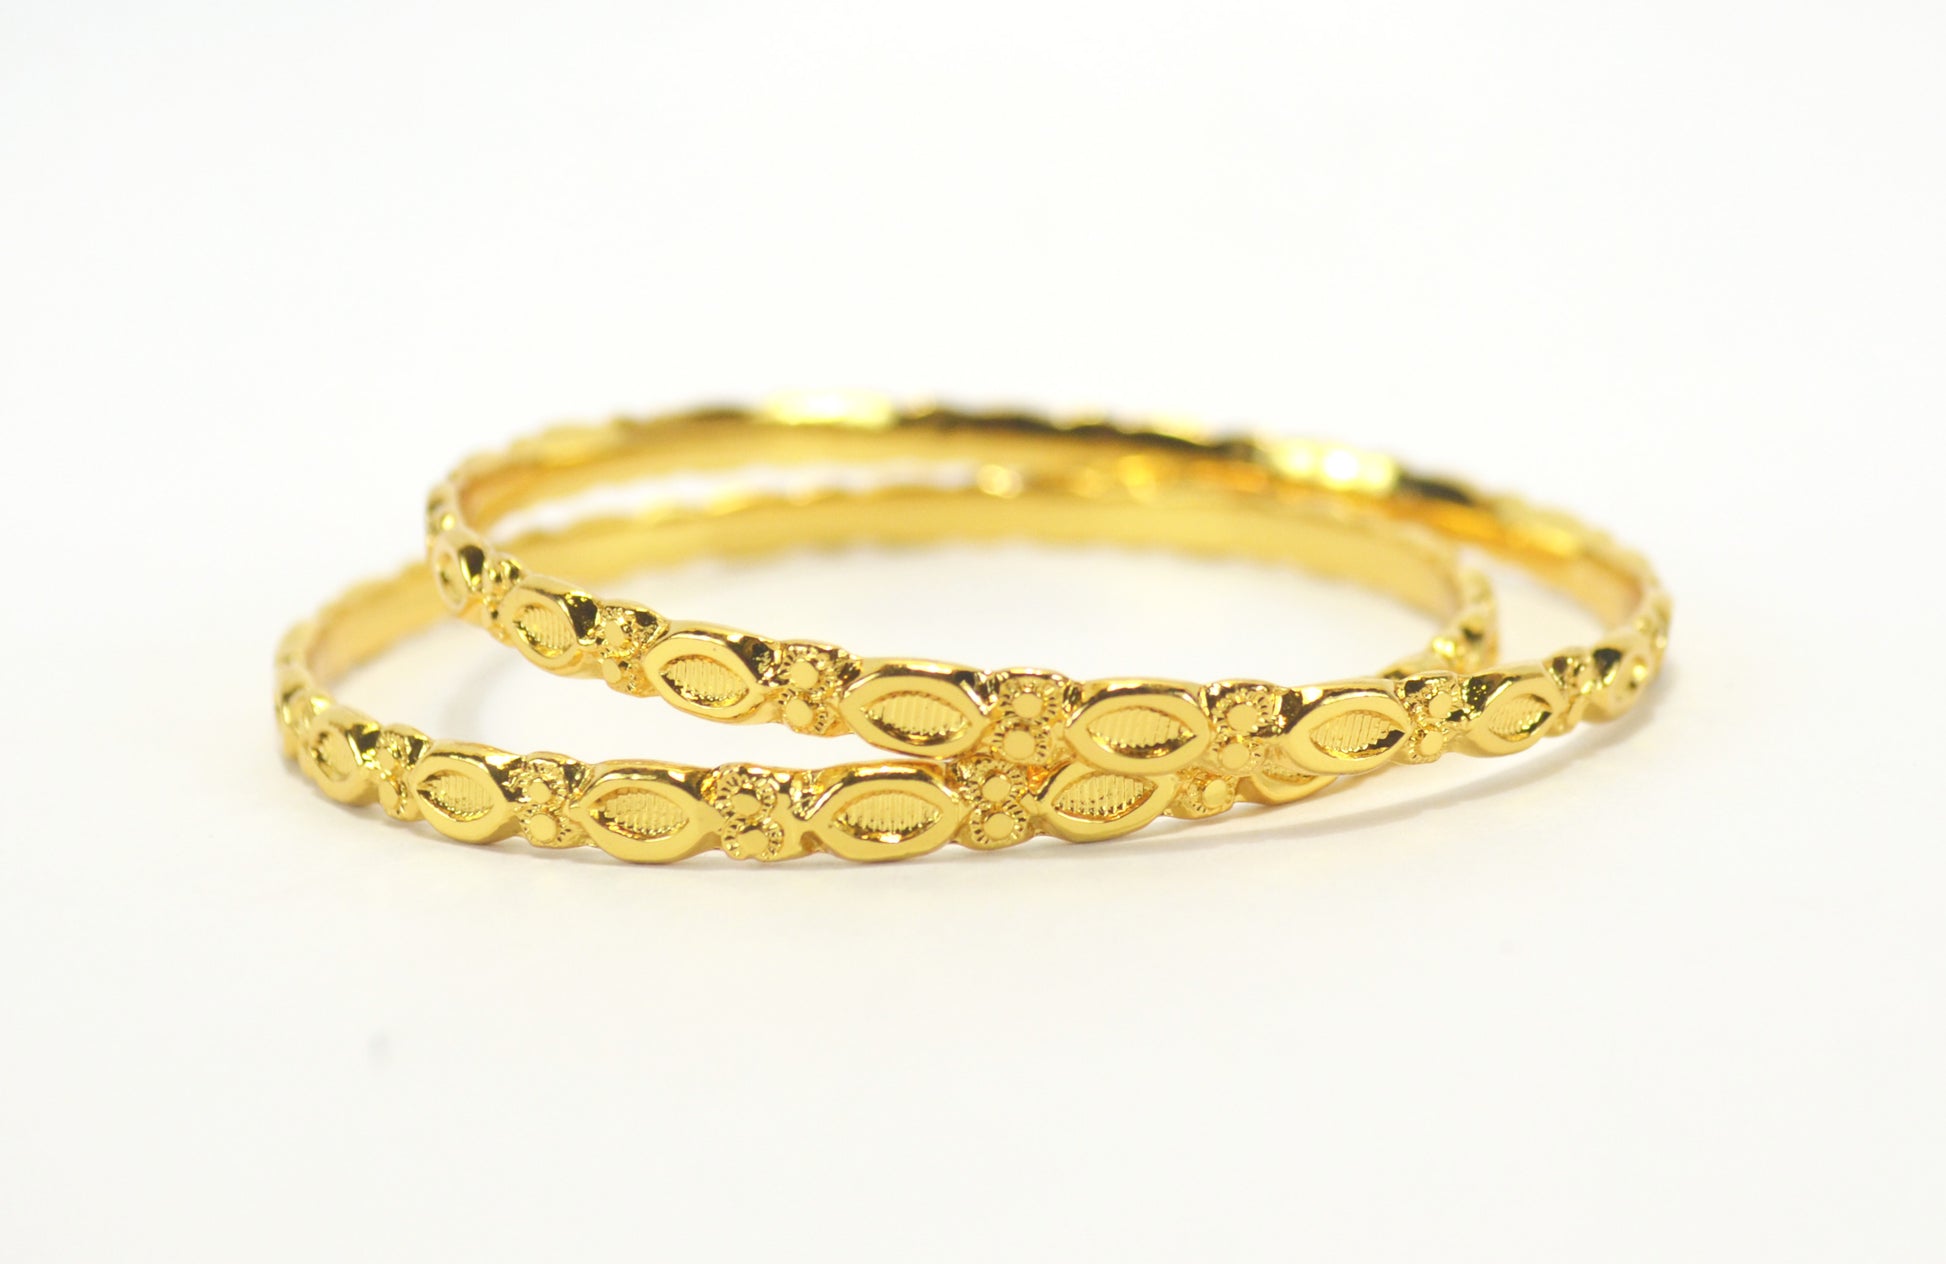 Gold plated daily wear bangle - Bangle by Shrayathi